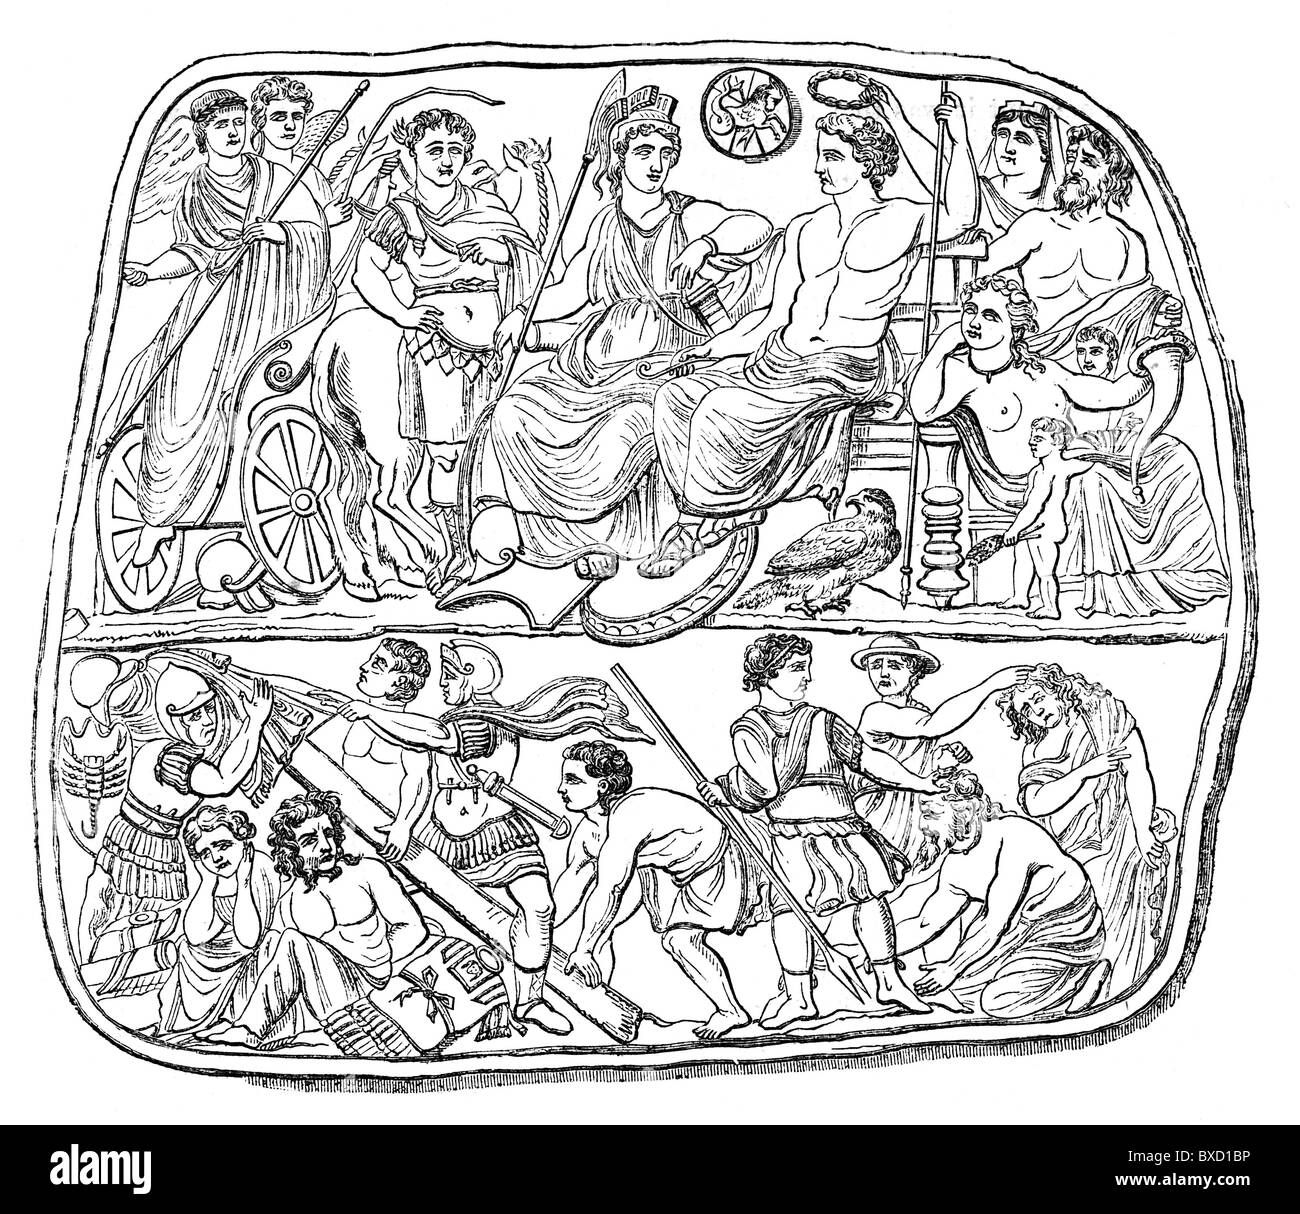 Le dessin des lignes ; l'apothéose de l'empereur romain Auguste, à partir de la brève apparition de Vienne ; noir et blanc Illustration ; Banque D'Images